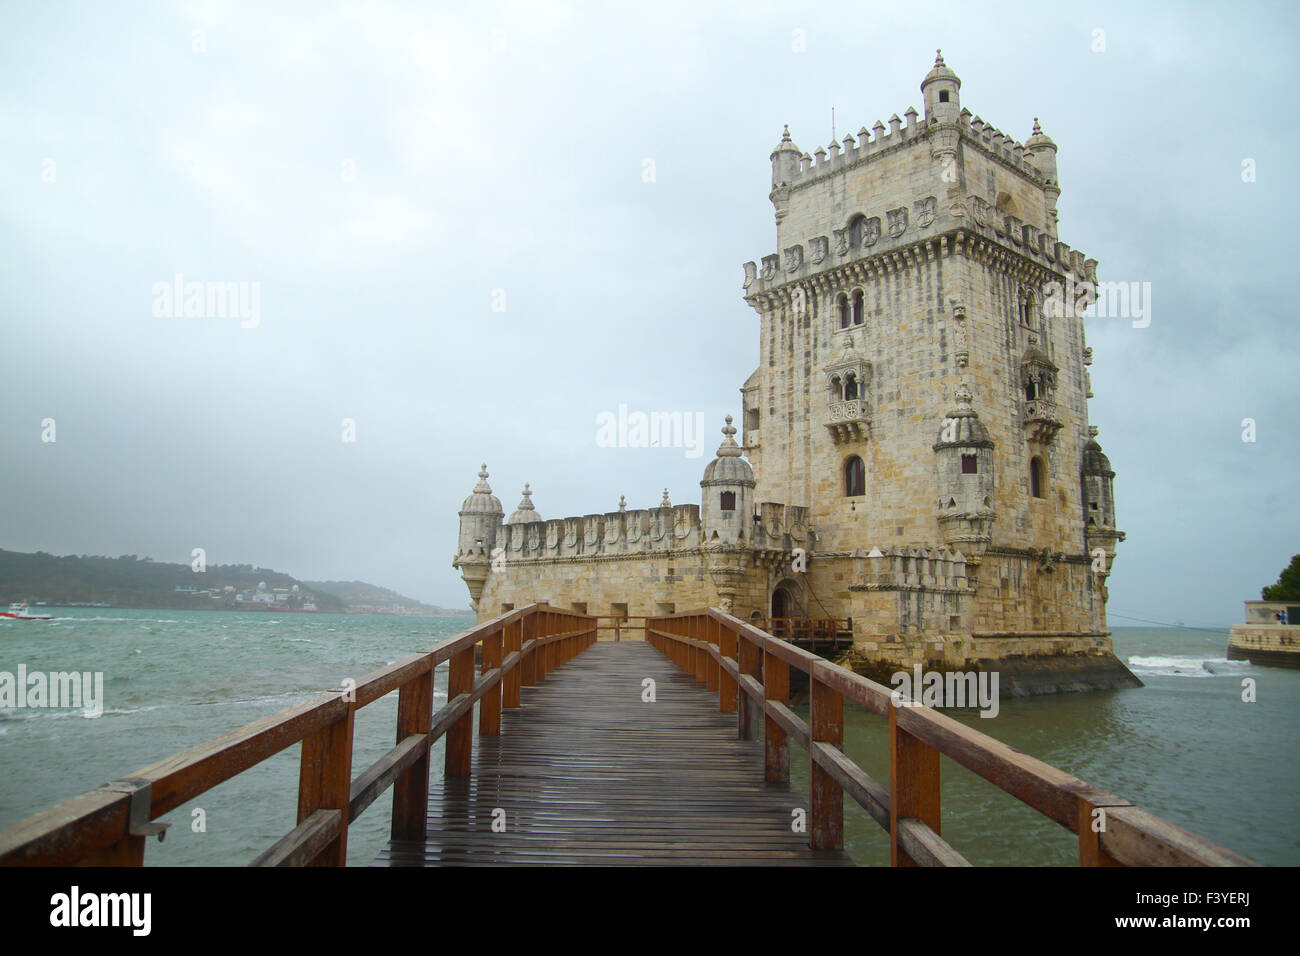 Lissabon, Portugal, 5. Oktober 2015. Eingang zum Belém Turm, die am Ufer der Mündung des Tejo. Der Turm ist ein UNESCO-Weltkulturerbe. Bildnachweis: David Mbiyu / Alamy Live News Stockfoto